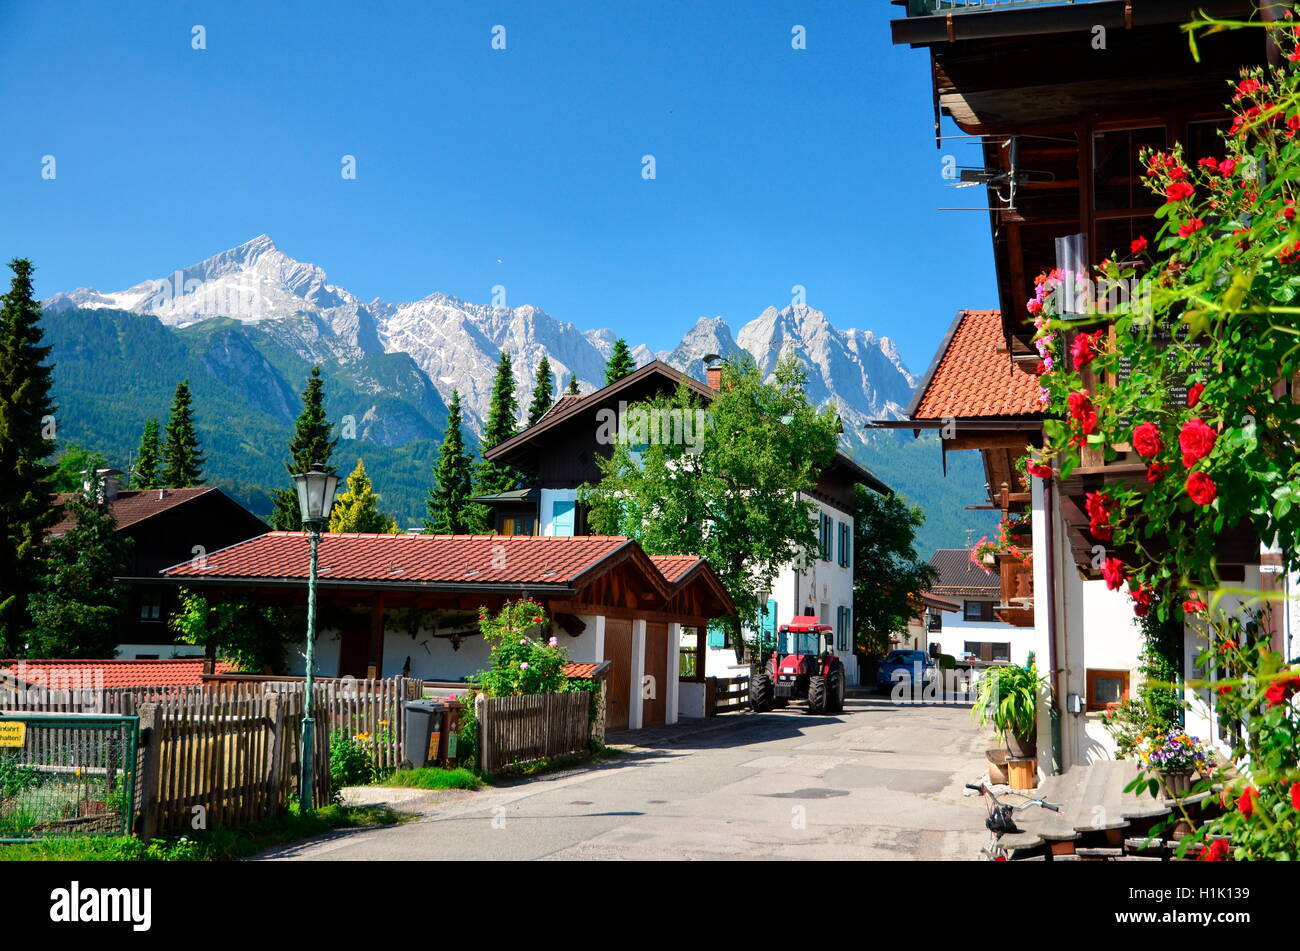 Bauernhaeuser, Blumenschmuck, Wettersteingebirge, Bayern, Garmisch-Partenkirchen, Deutschland Stockfoto